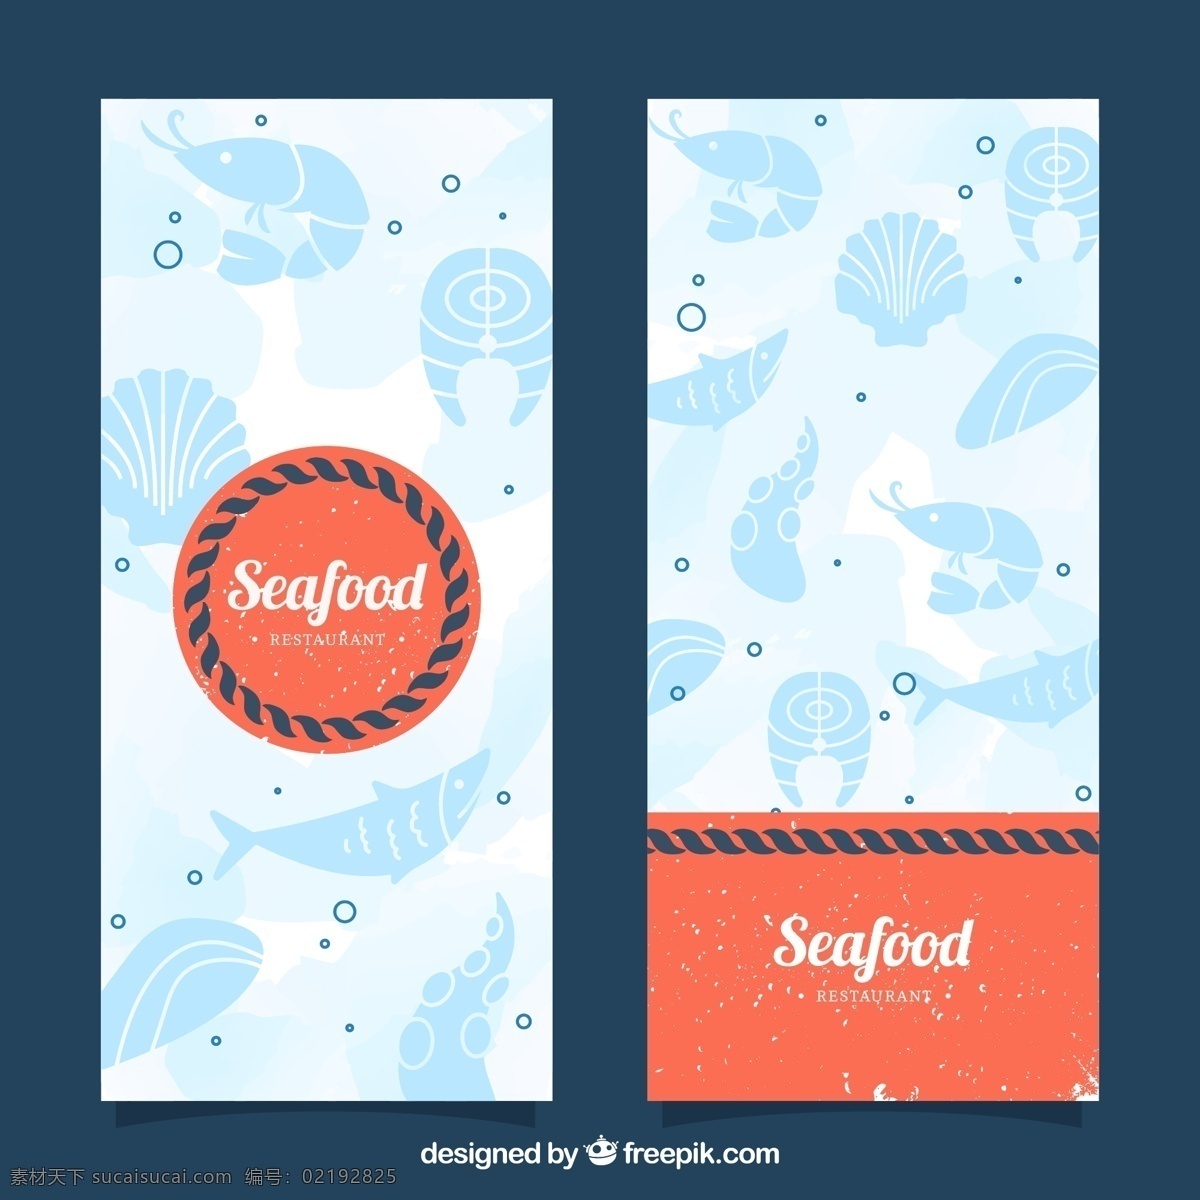 老式 海鲜 横幅 海鲜的横幅 海鲜背景 横幅素材 矢量横幅 卡片设计